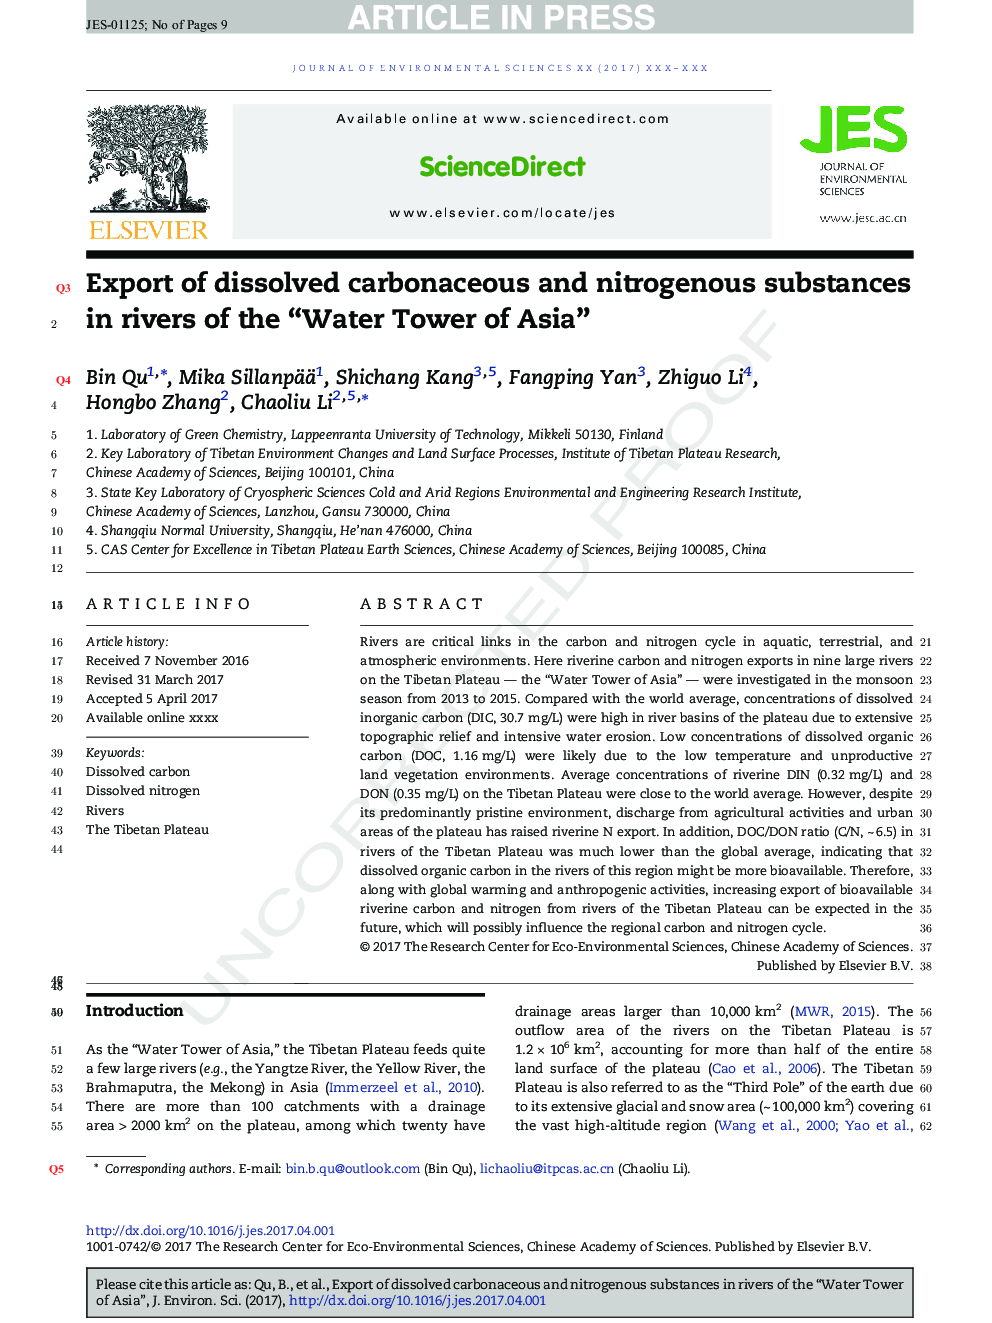 صادرات مواد کربنیک و نیتروژن محلول در رودخانه های برج آب آسیا 